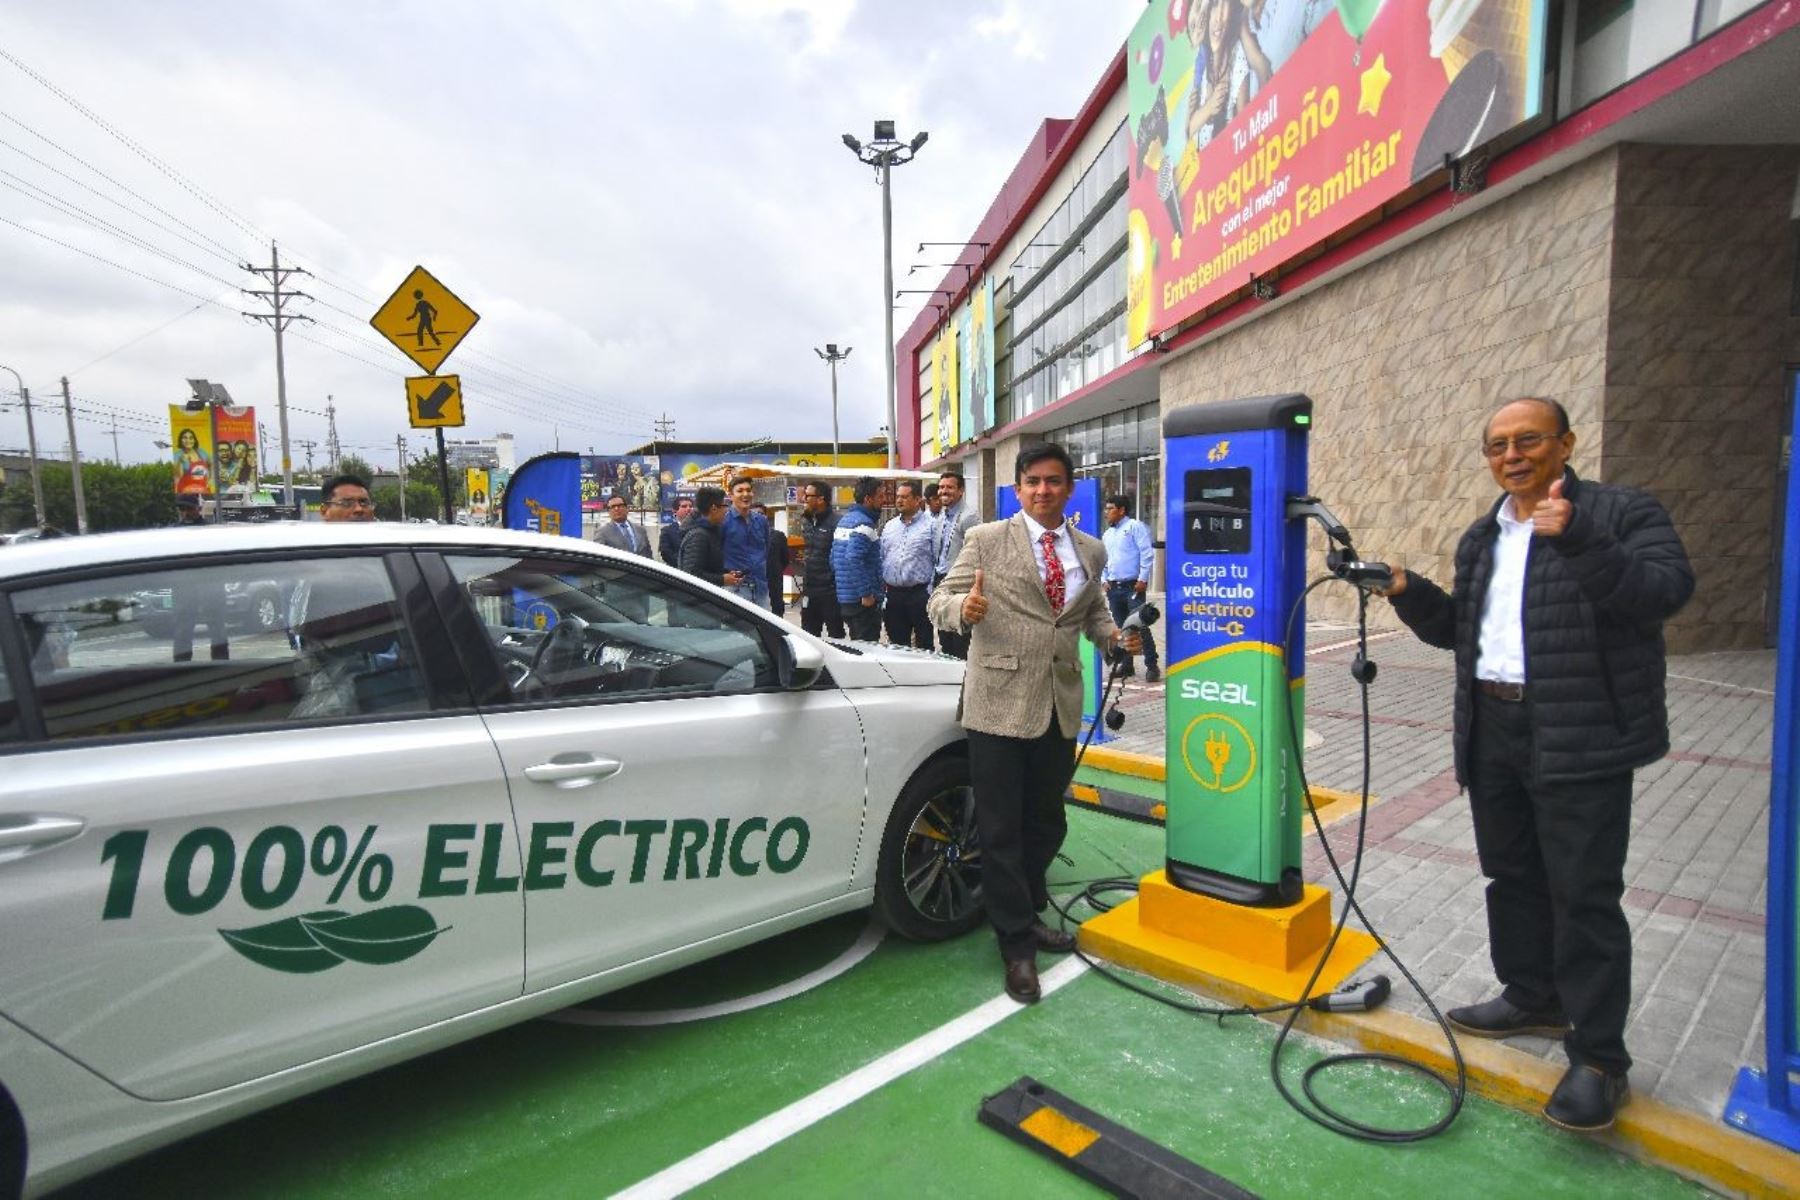 Viceministro de Electricidad, Jaime Luyo Kuong, participó en la inauguración de tres puntos de recarga para vehículos eléctricos en Arequipa. Foto: cortesía.